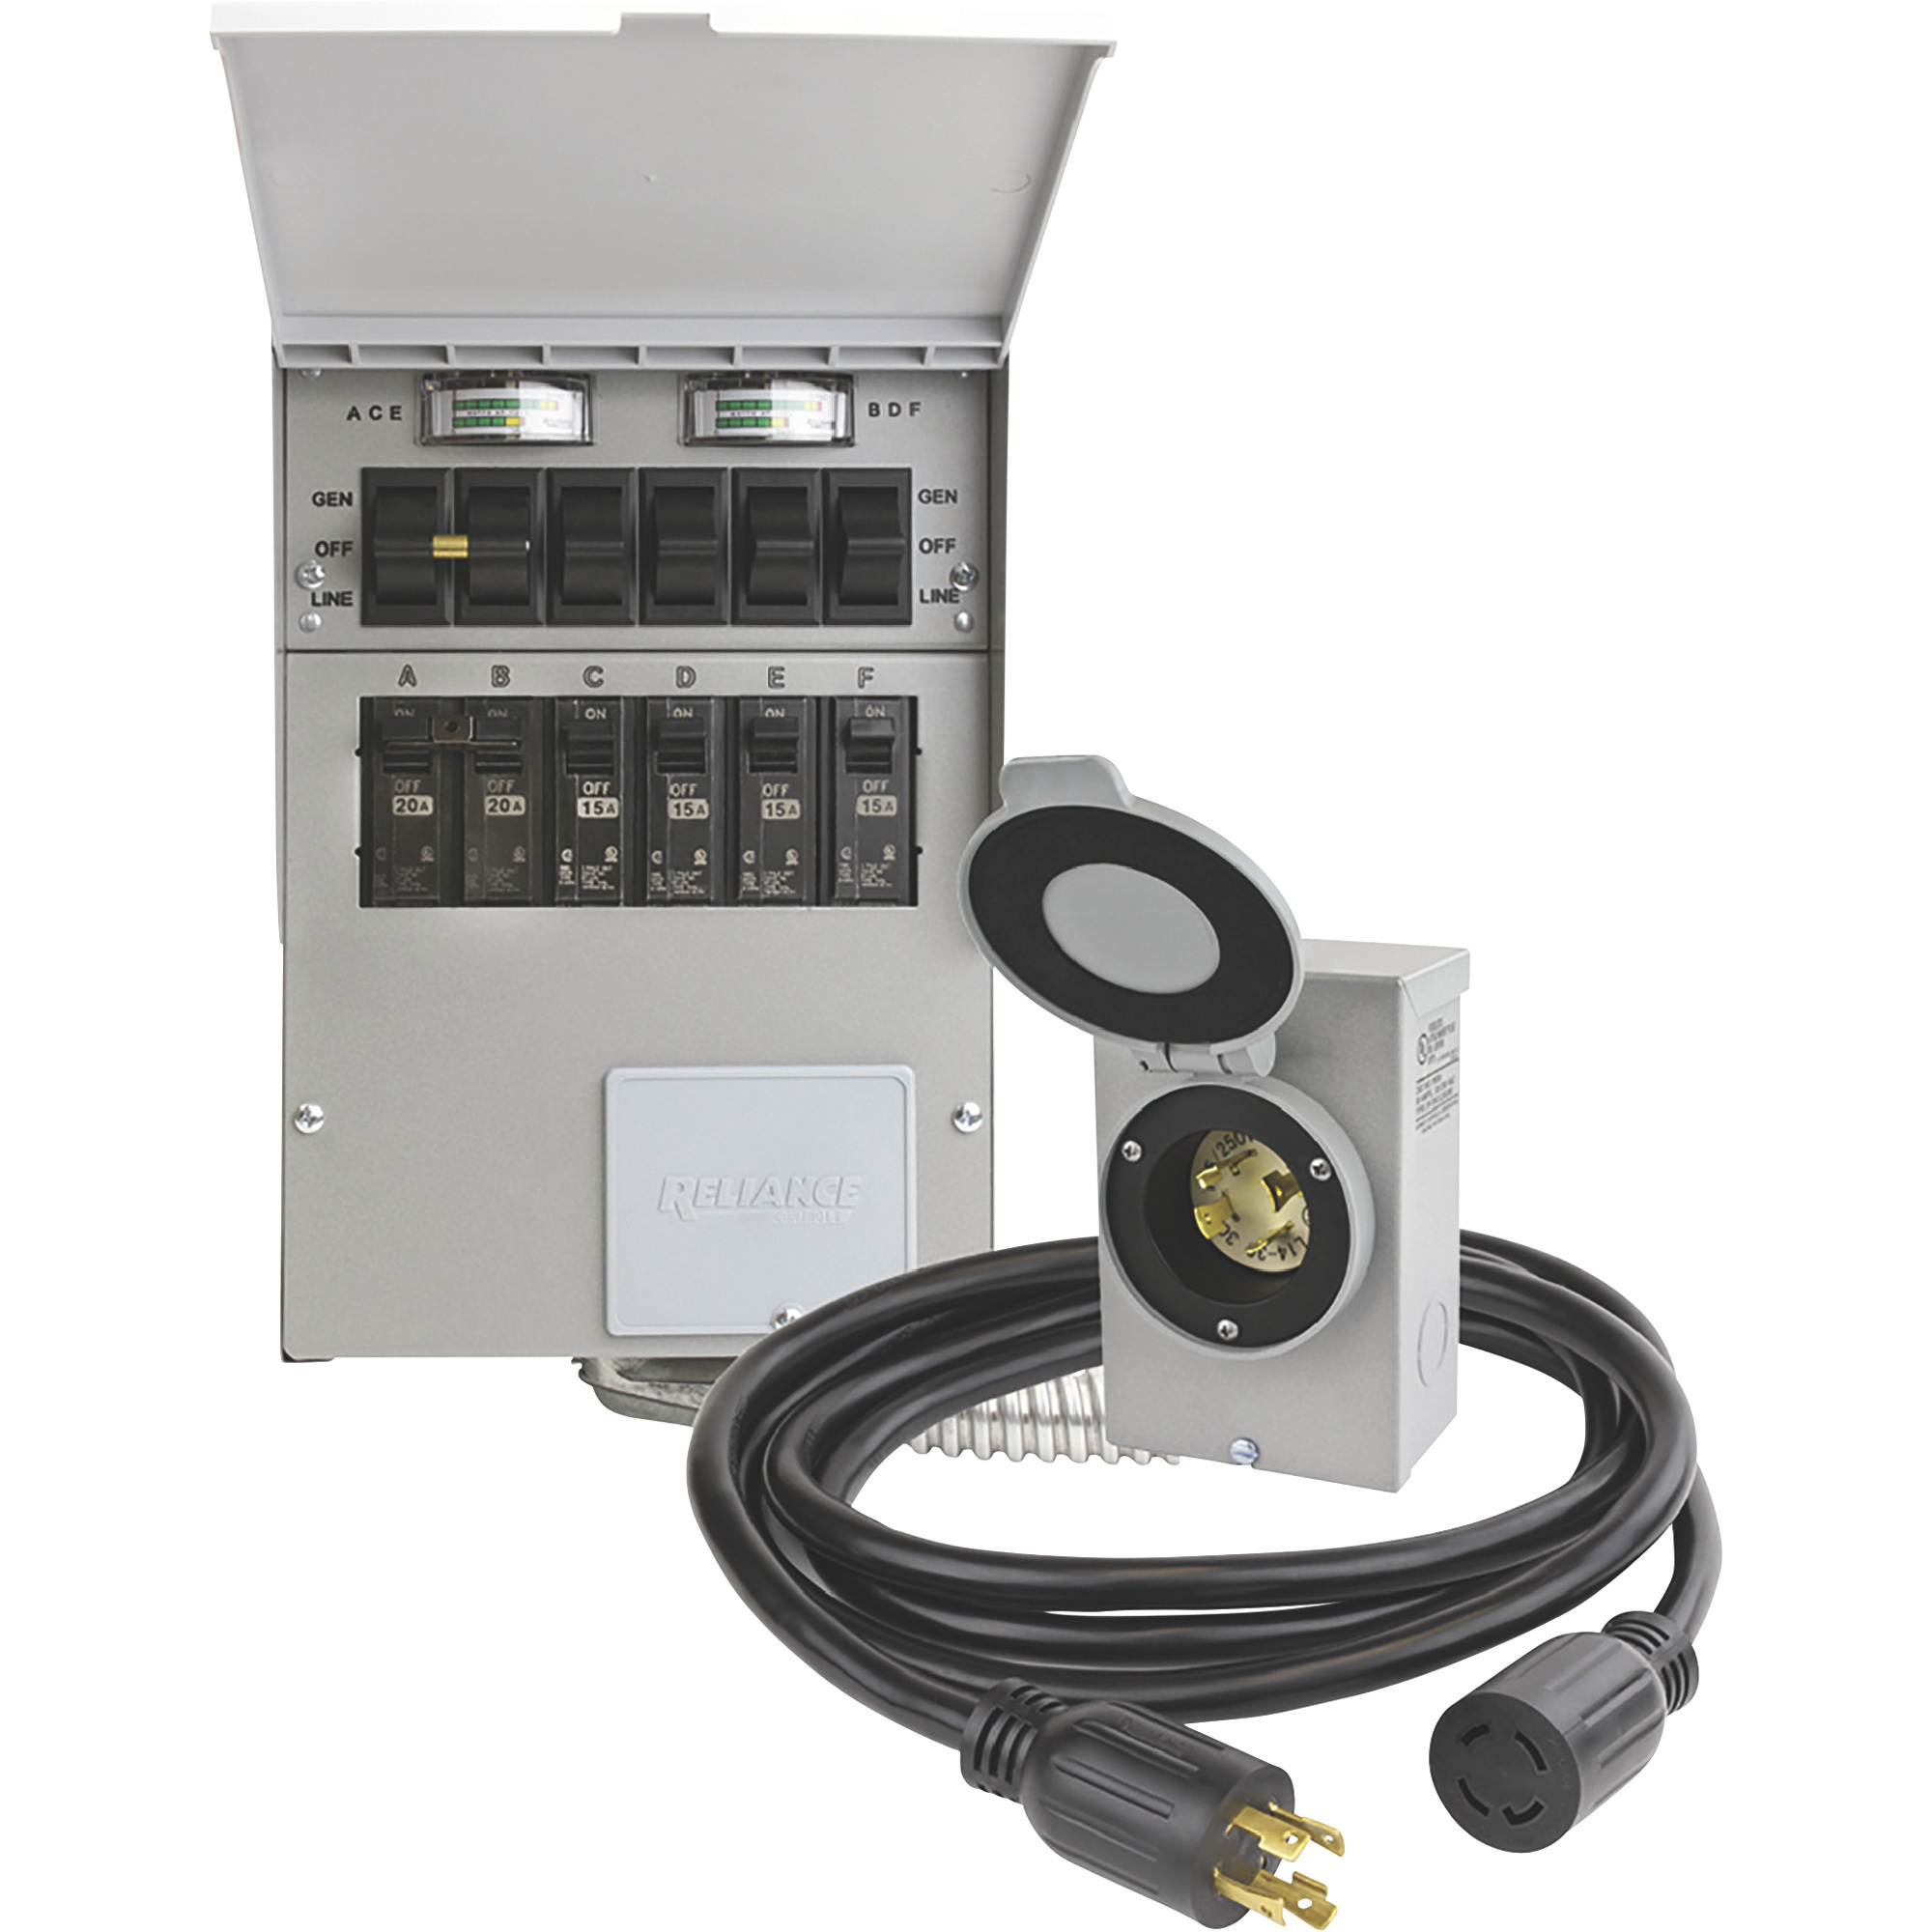 Reliance Generator Transfer Switch Kit â 6 Circuits, Model 306CRK